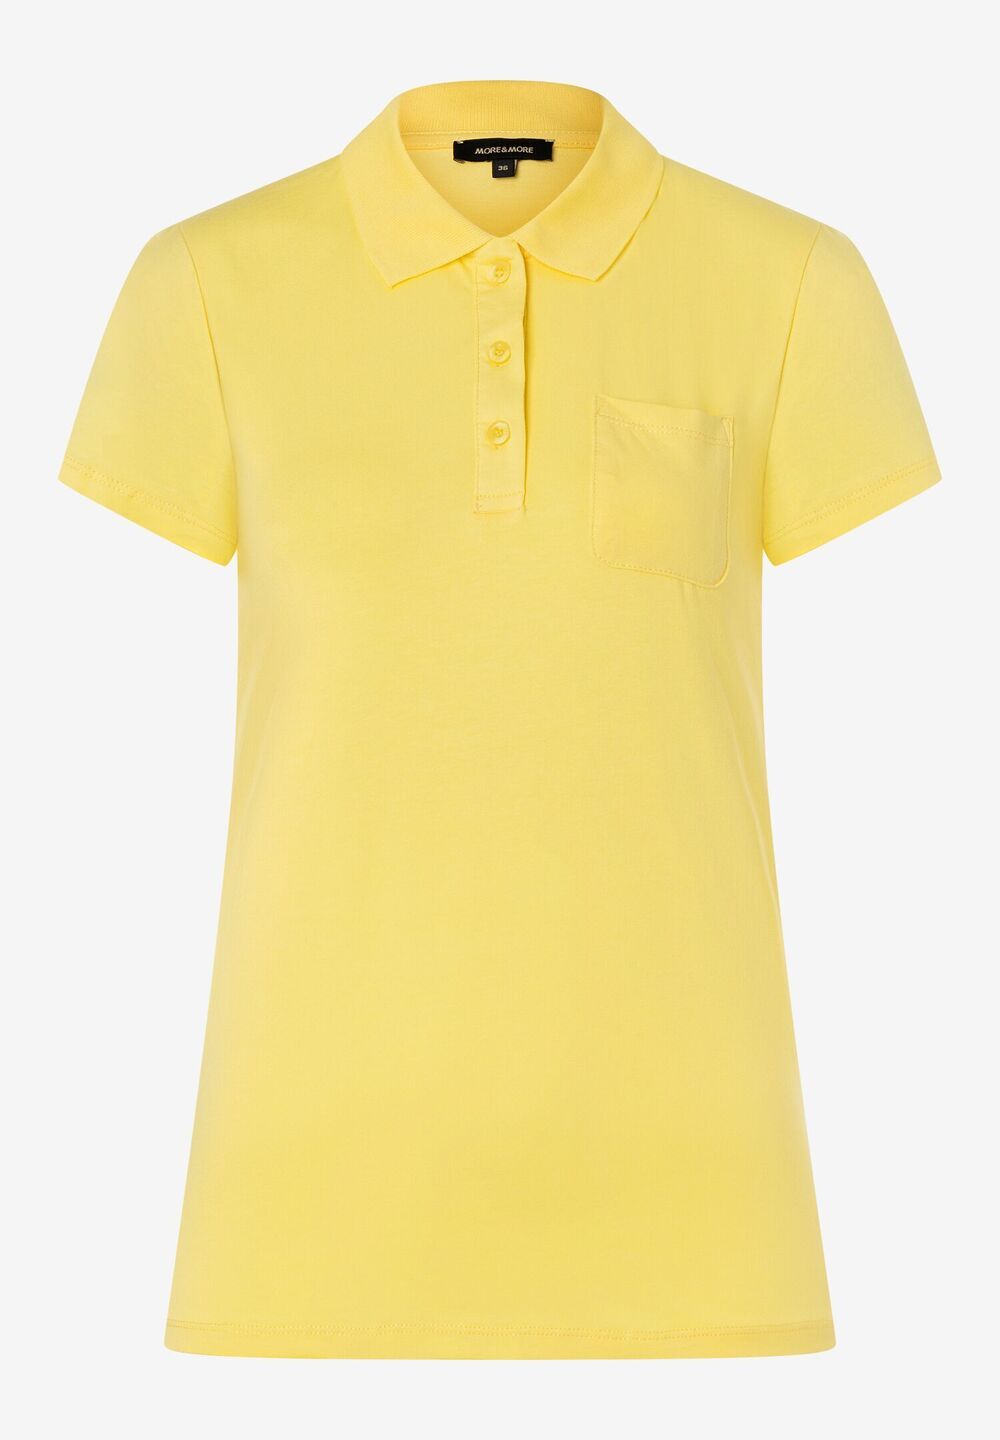 Poloshirt, daisy yellow, Frühjahrs-Kollektion, gelbRückansicht